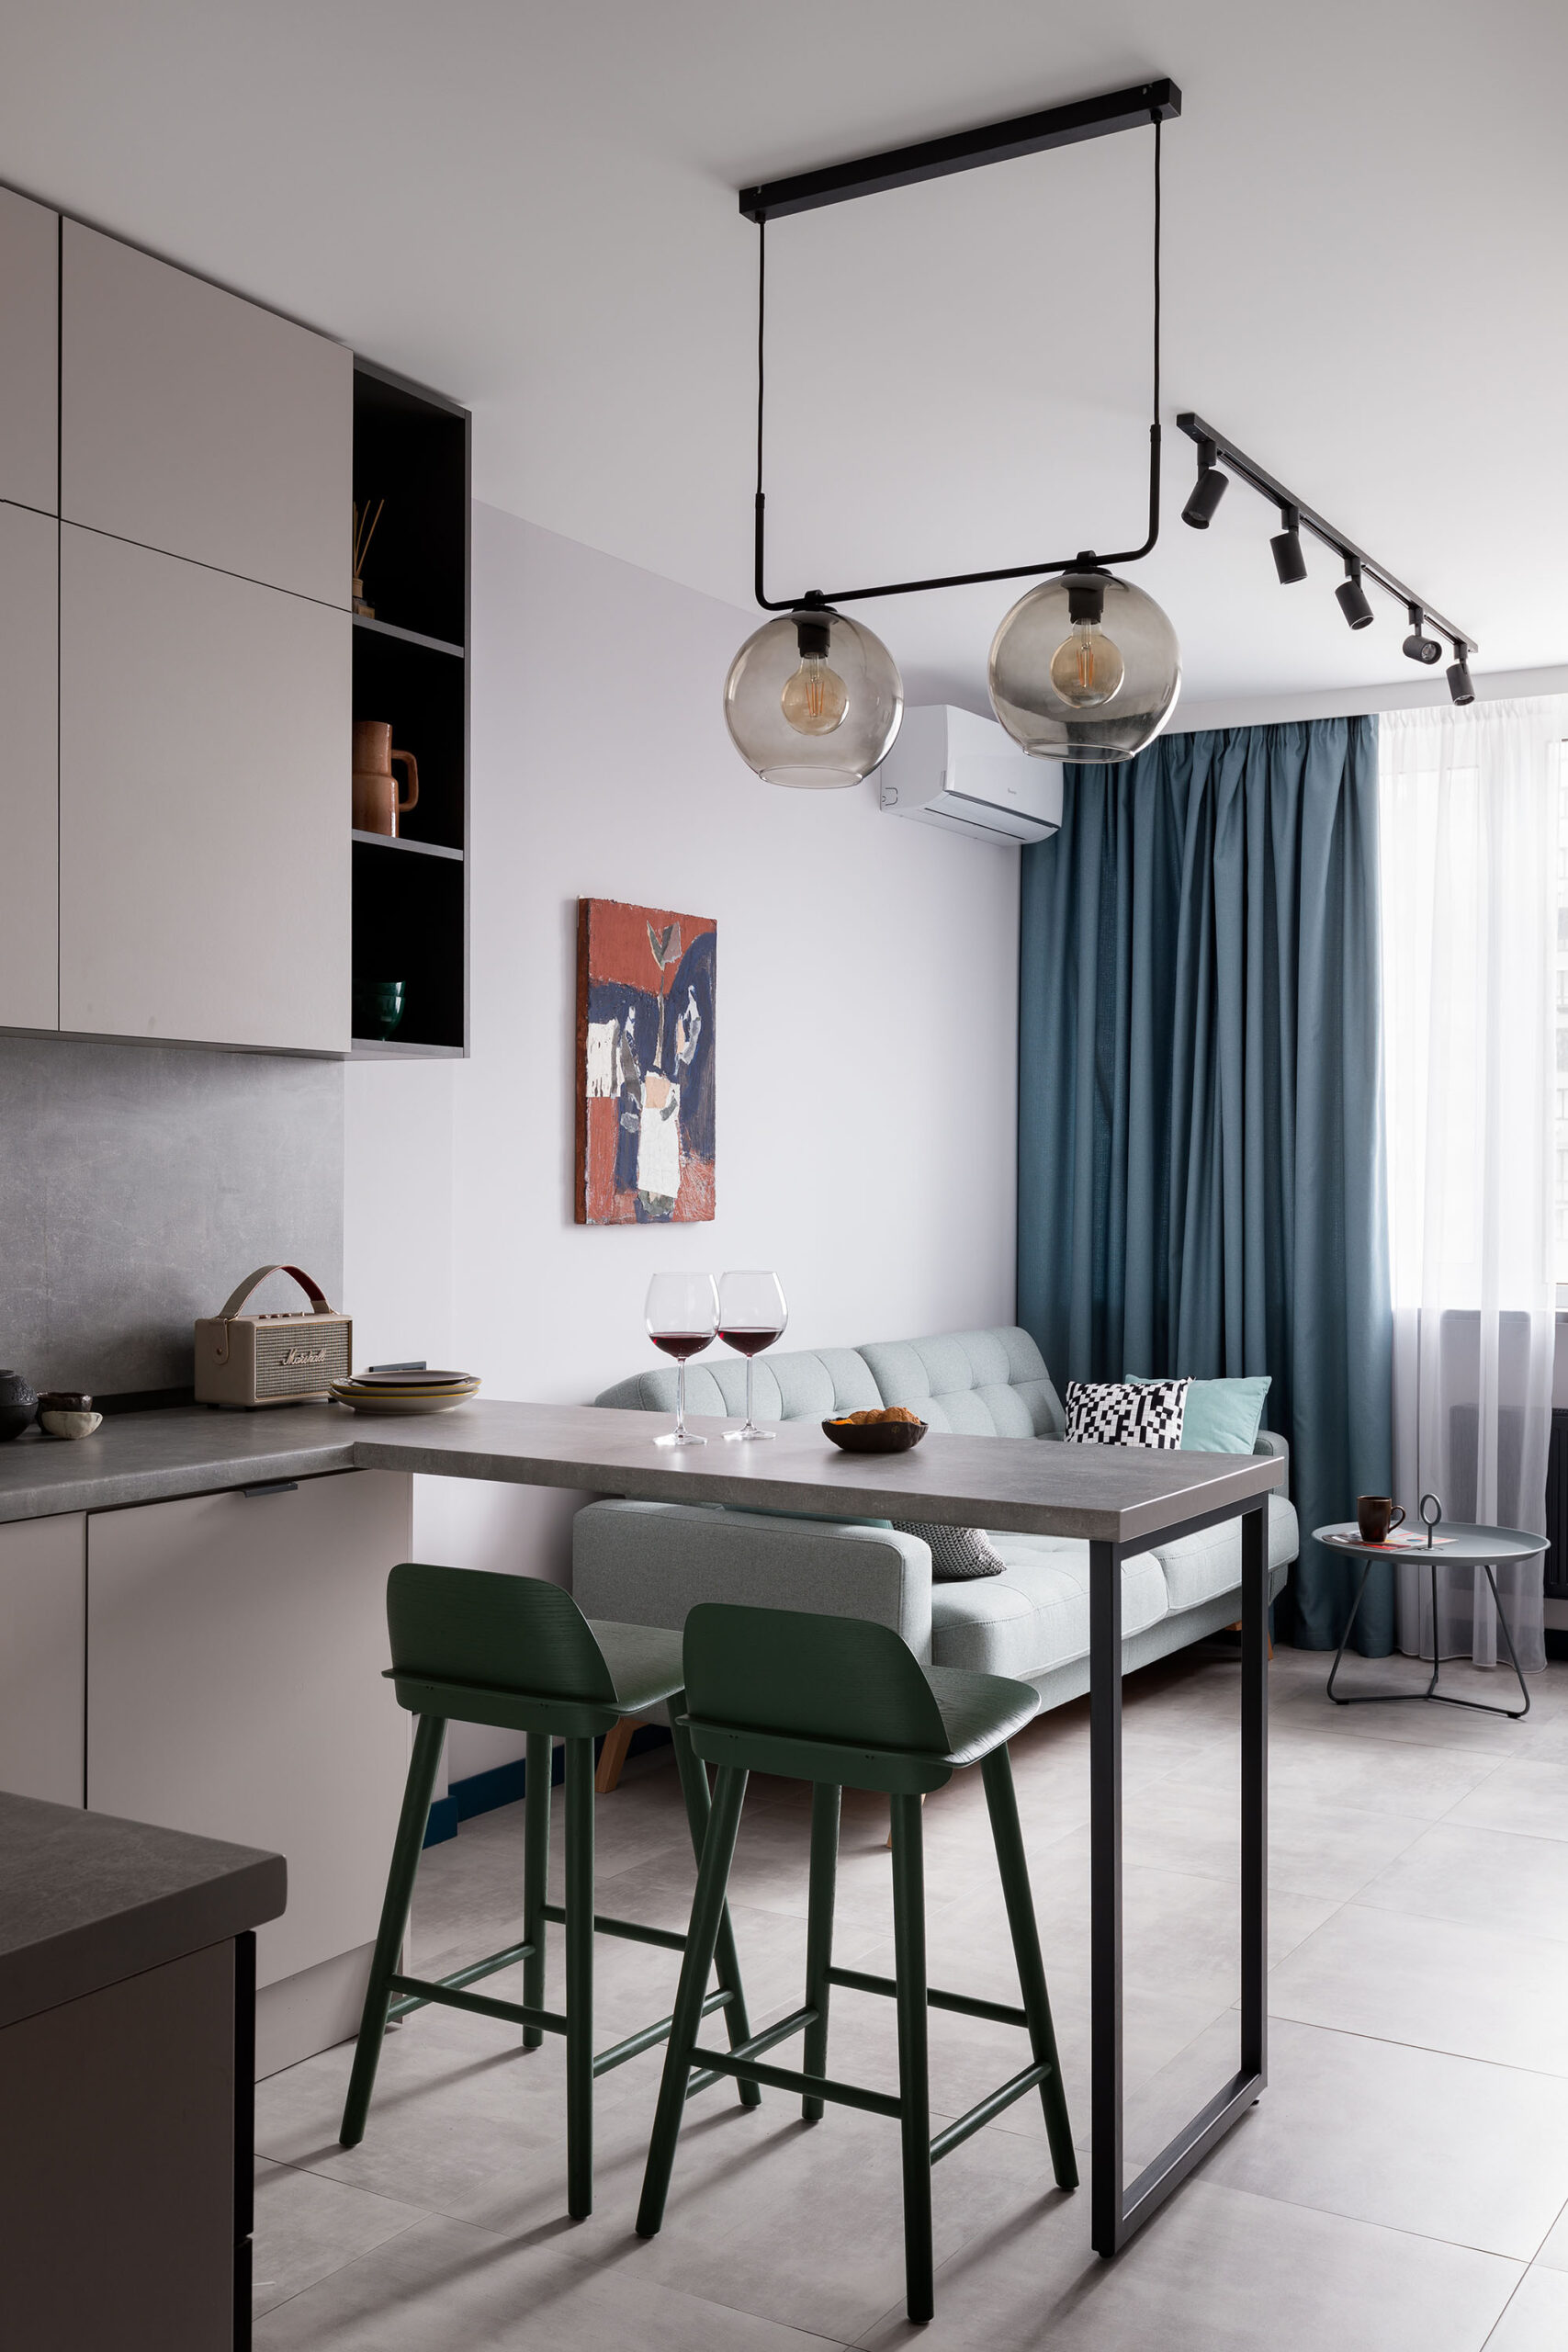 El diseño nórdico de este apartamento genera un espacio elegante y funcional